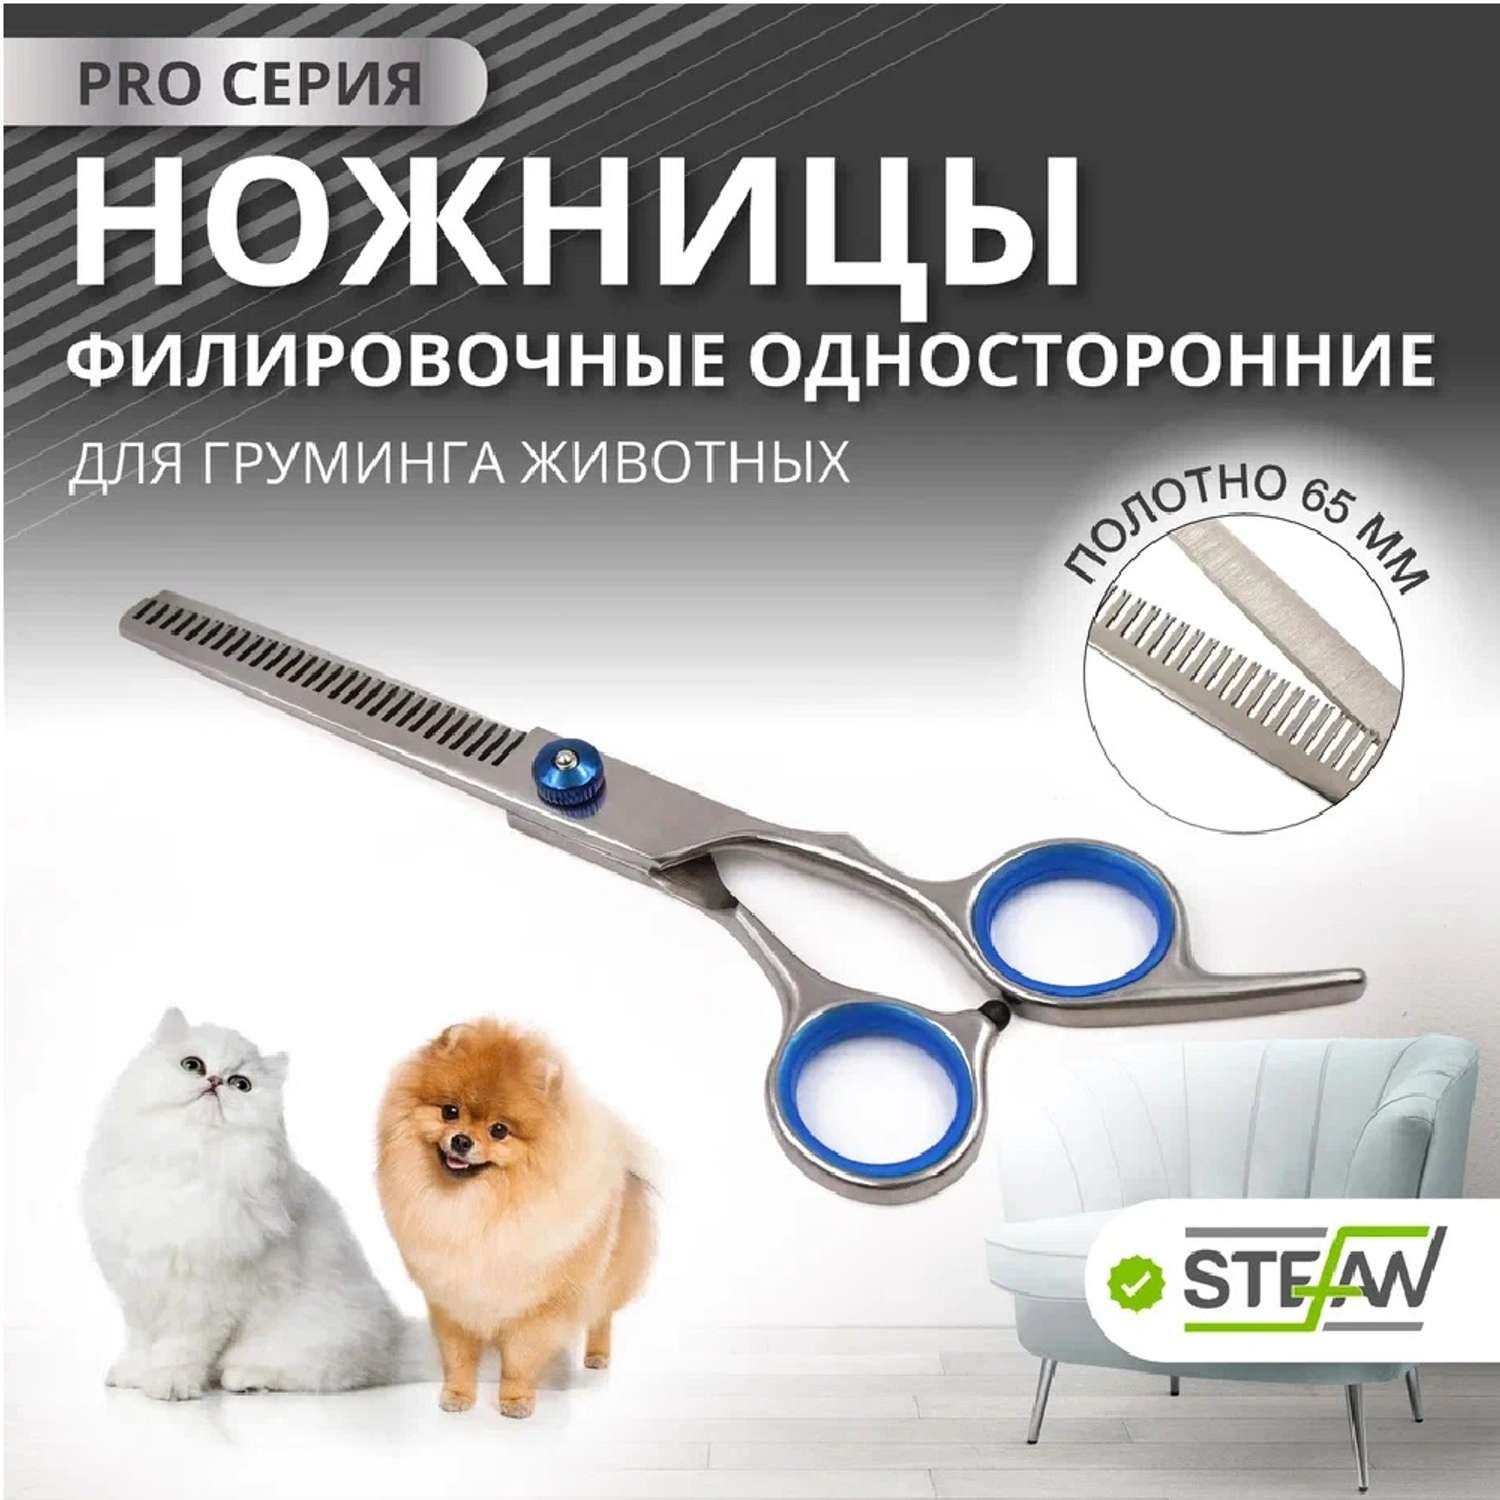 Ножницы для животных Stefan филировочные односторонние полотно 65мм - фото 1